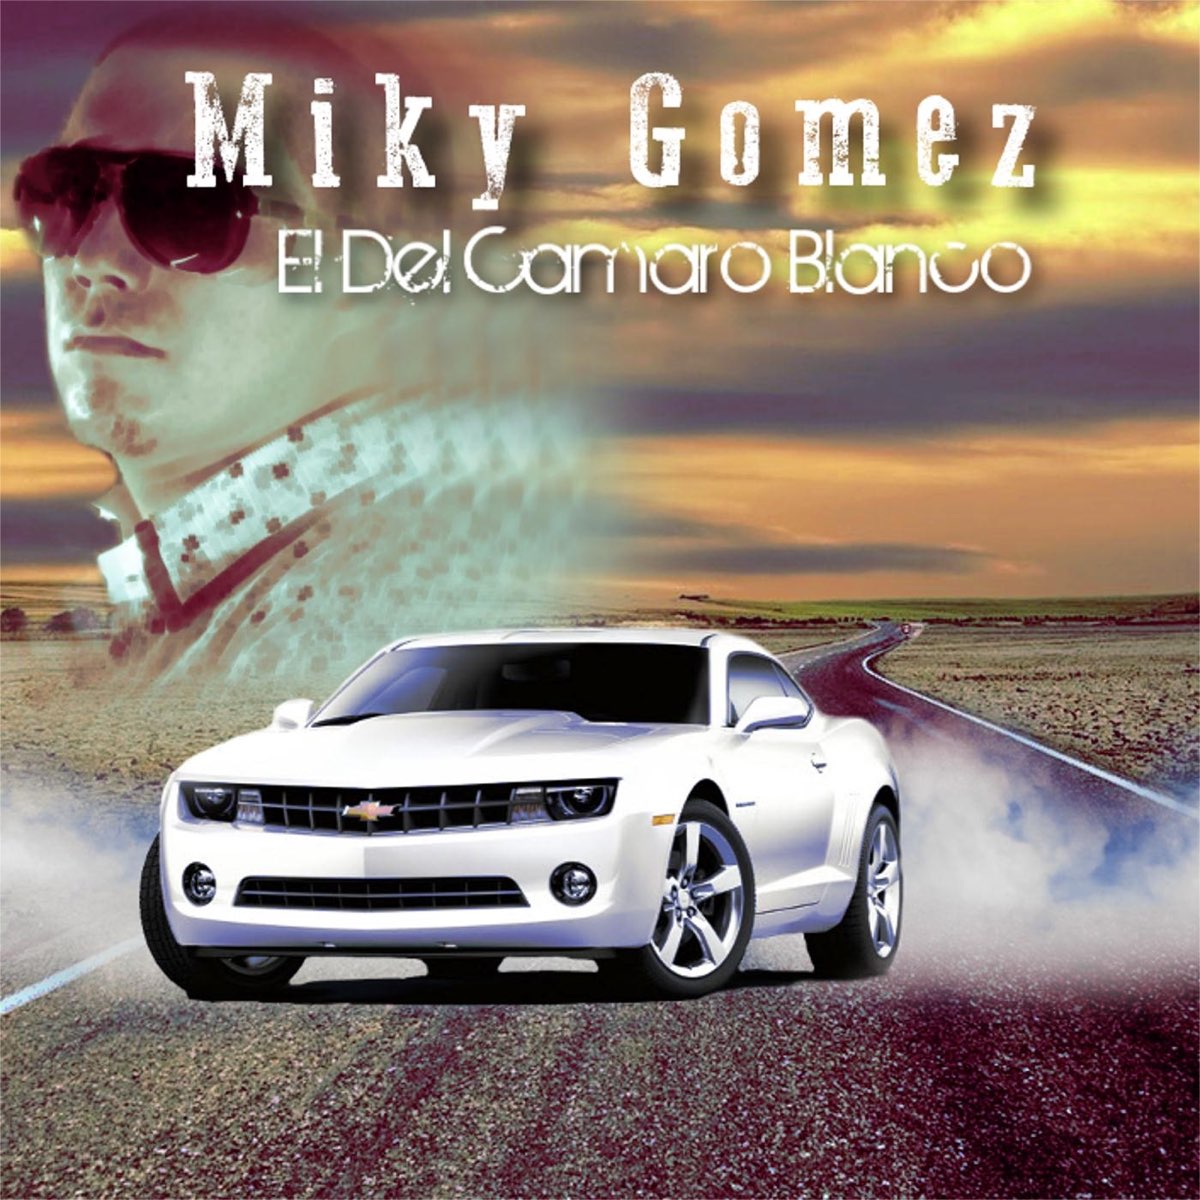 El del Camaro Blanco - Single de Miky Gomez en Apple Music